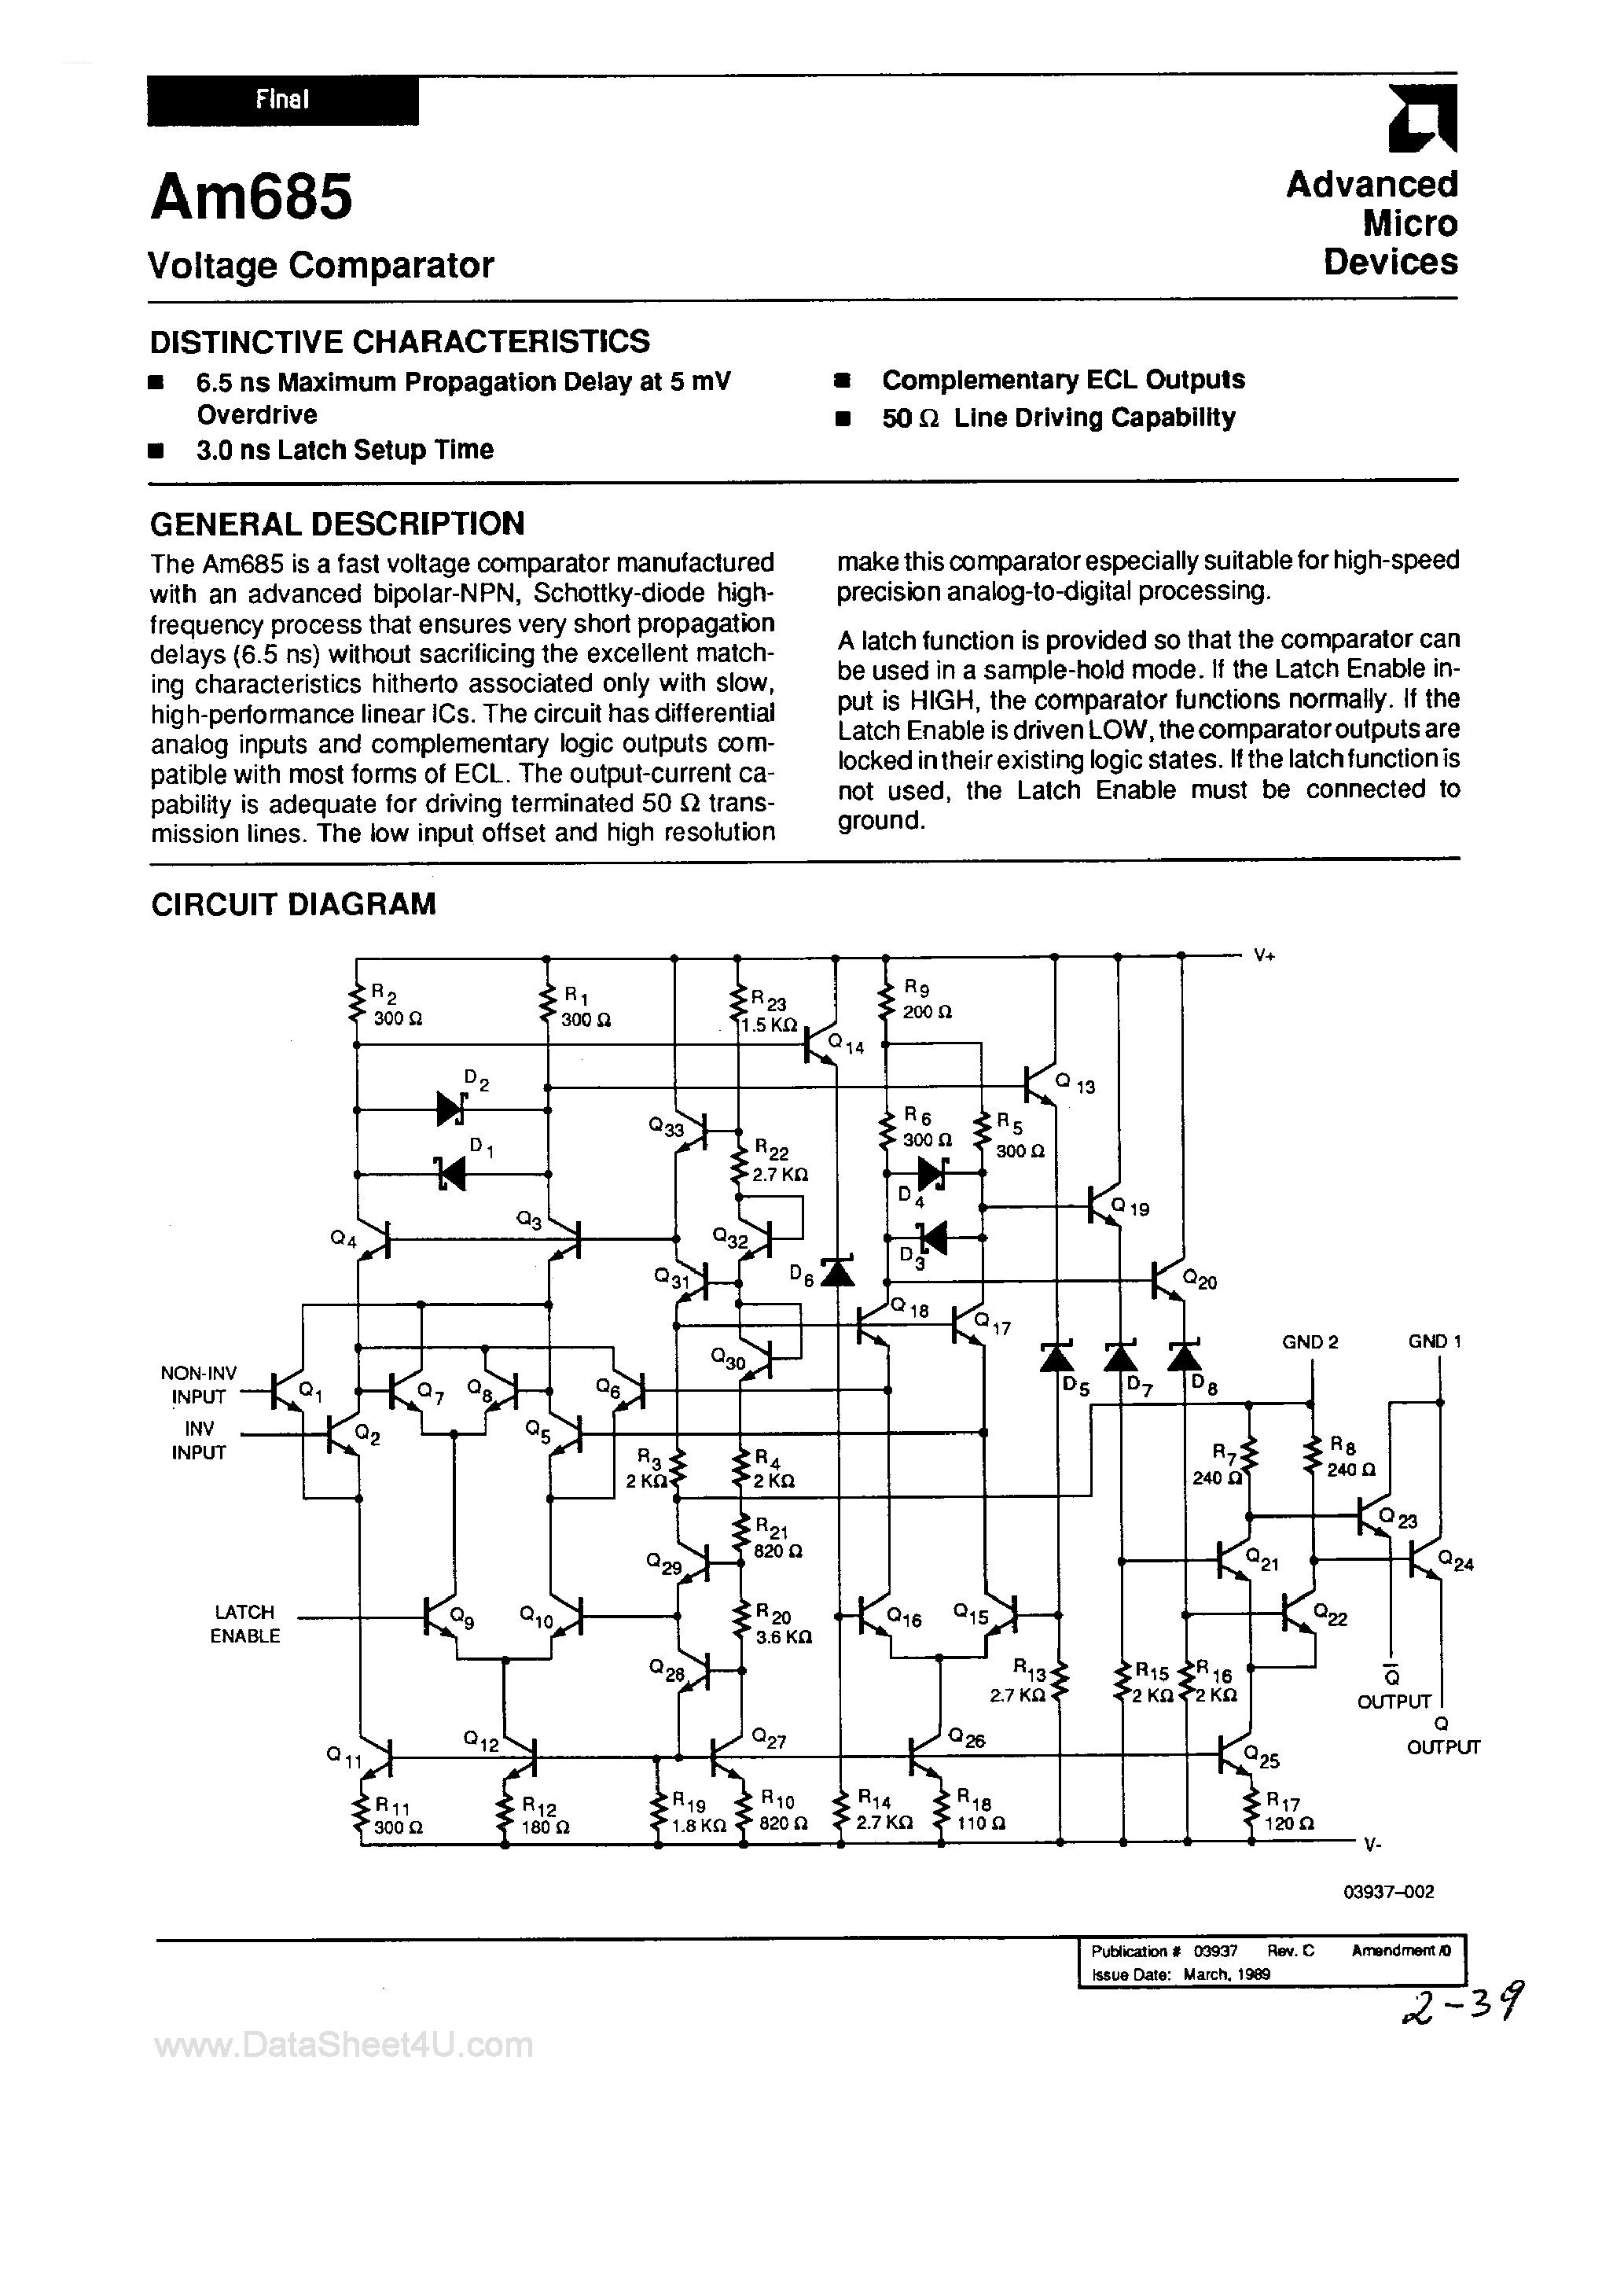 Даташит AM685 - Voltage Comparator страница 1